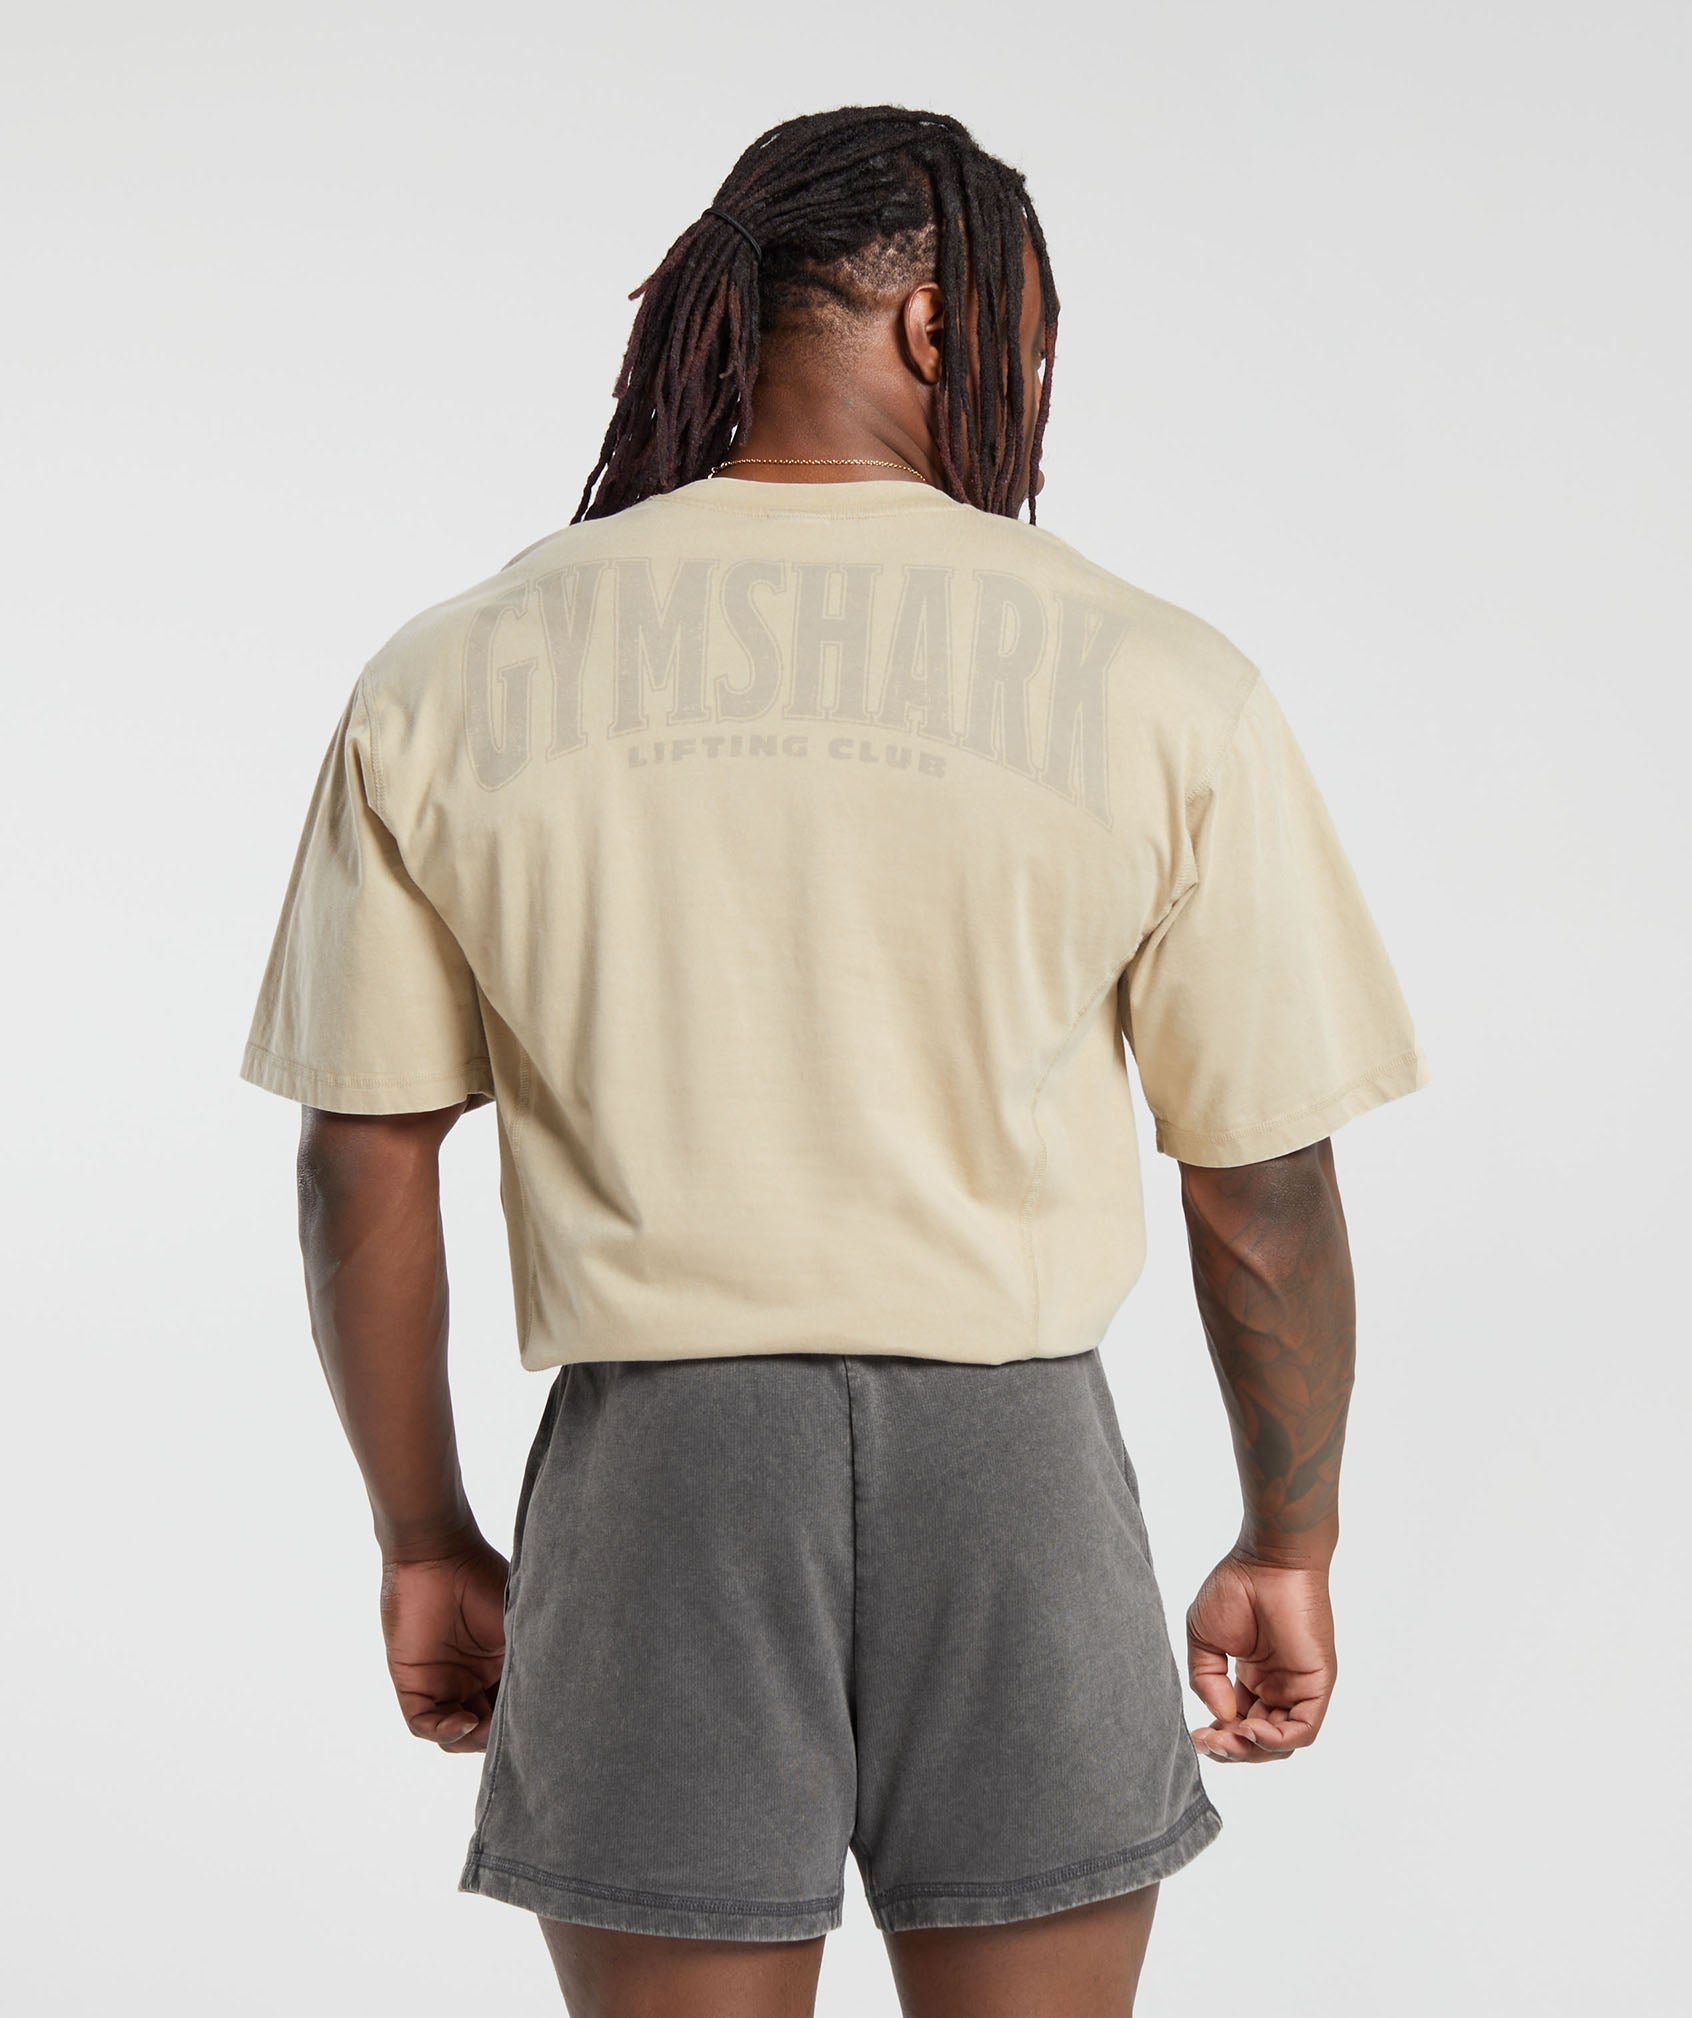 Gymshark Legacy T-Shirt - Washed Mauve